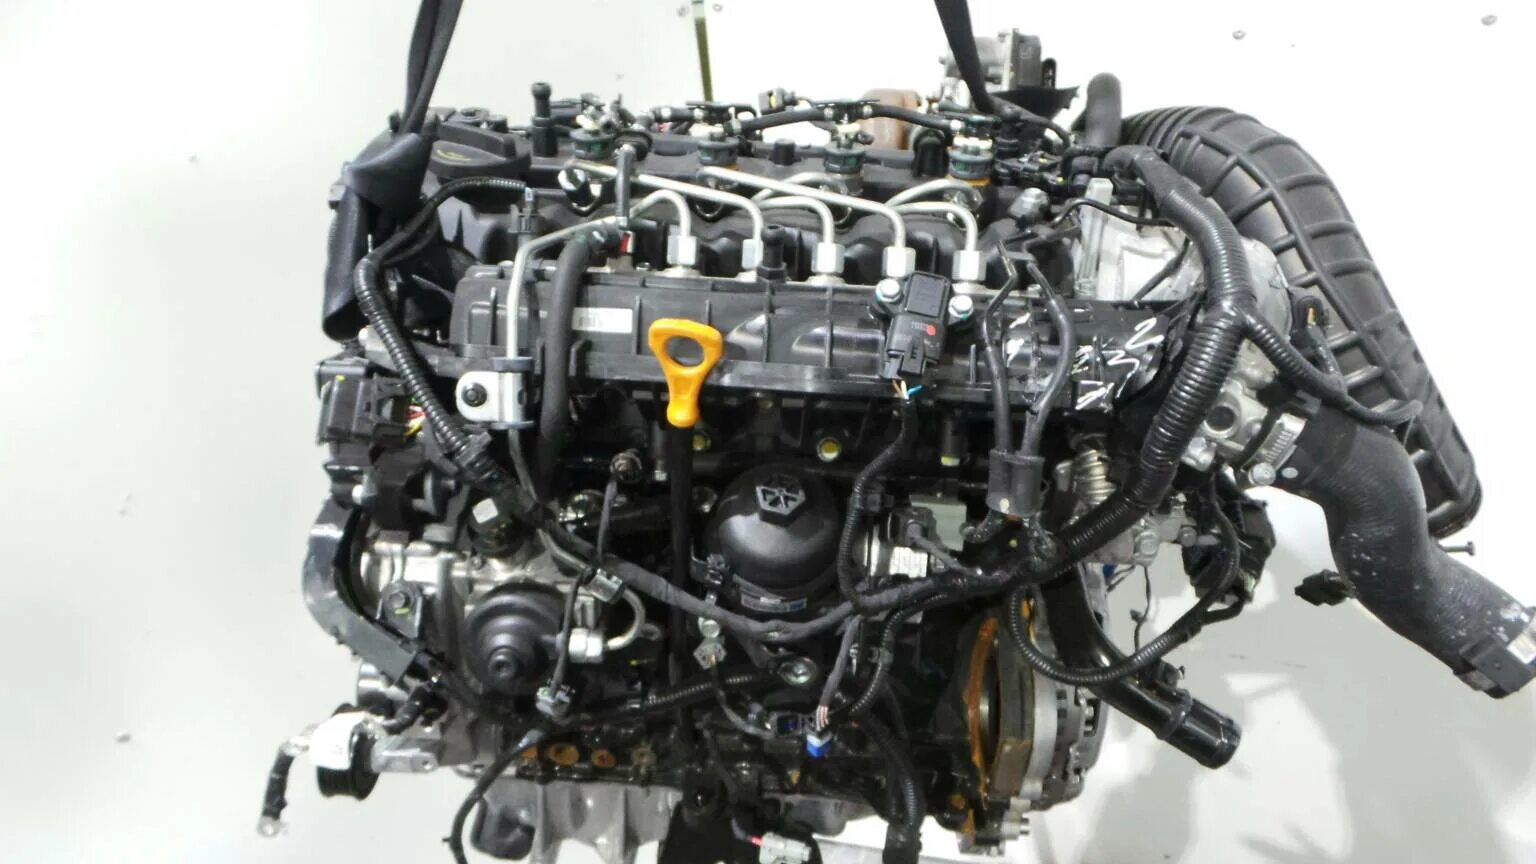 Киа сид 2008 двигатели. Двигатель Киа СИД 1.6. Kia Ceed 1.6 CRDI. Двигатель Киа СИД 1. Kia Ceed дизель 1,6.